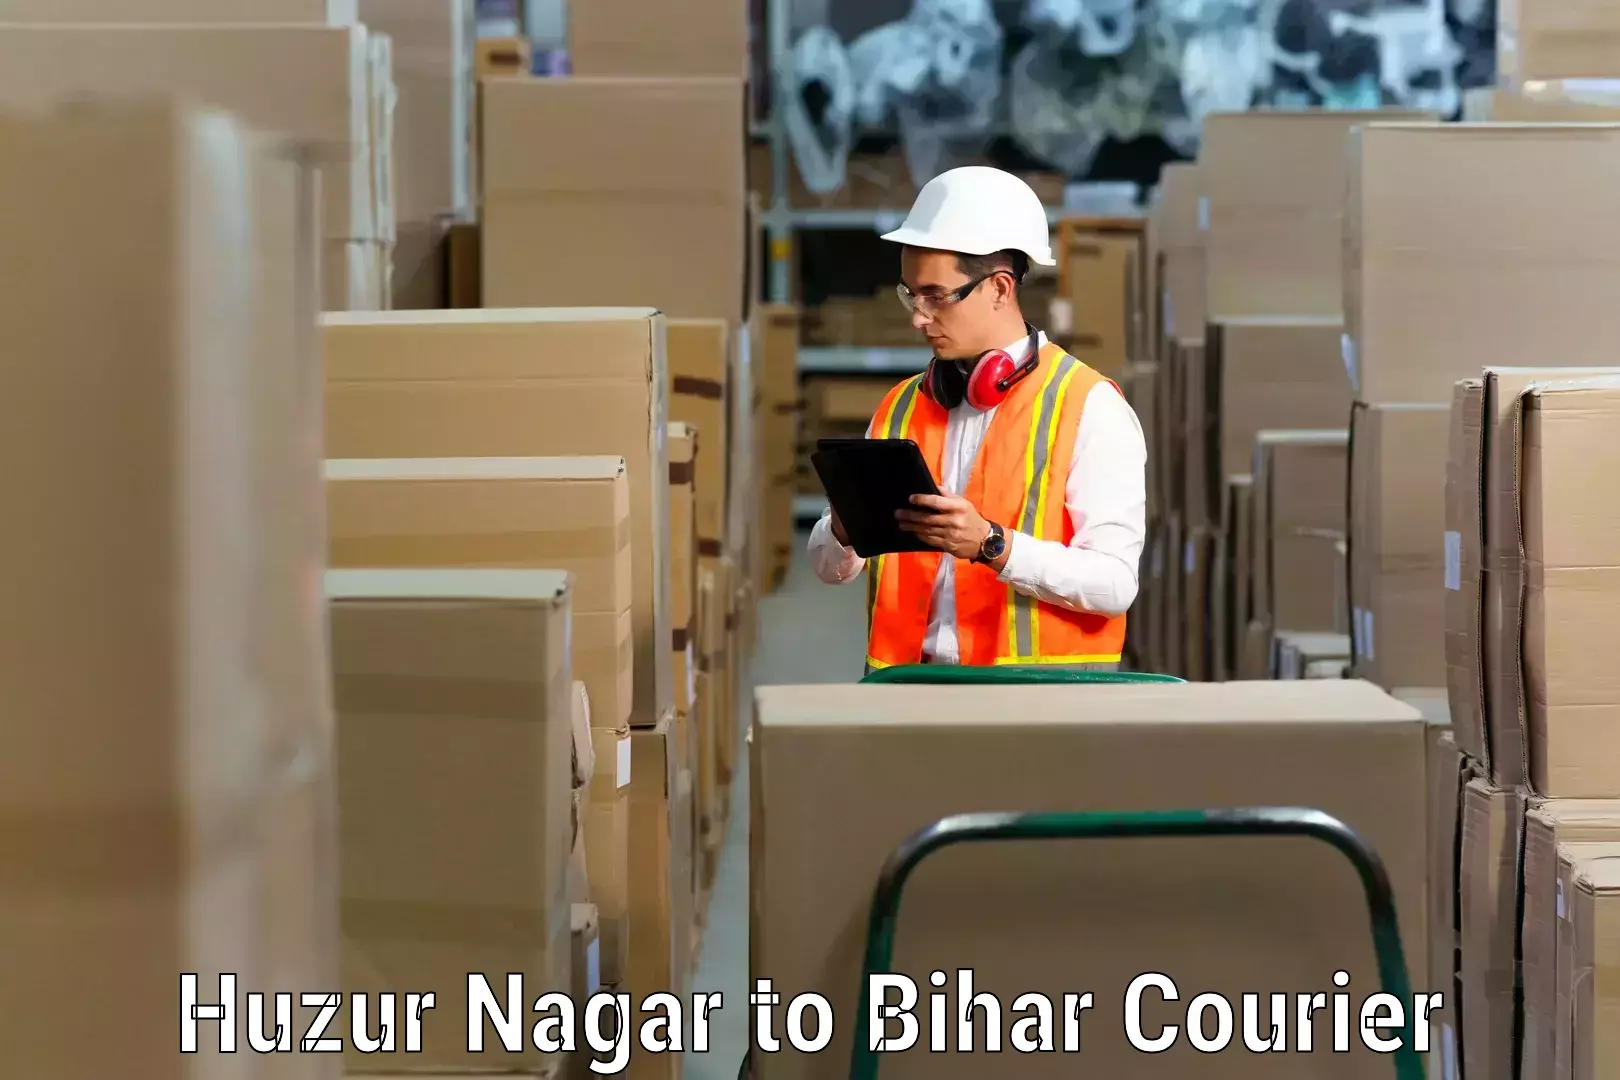 Furniture moving experts Huzur Nagar to Rajgir